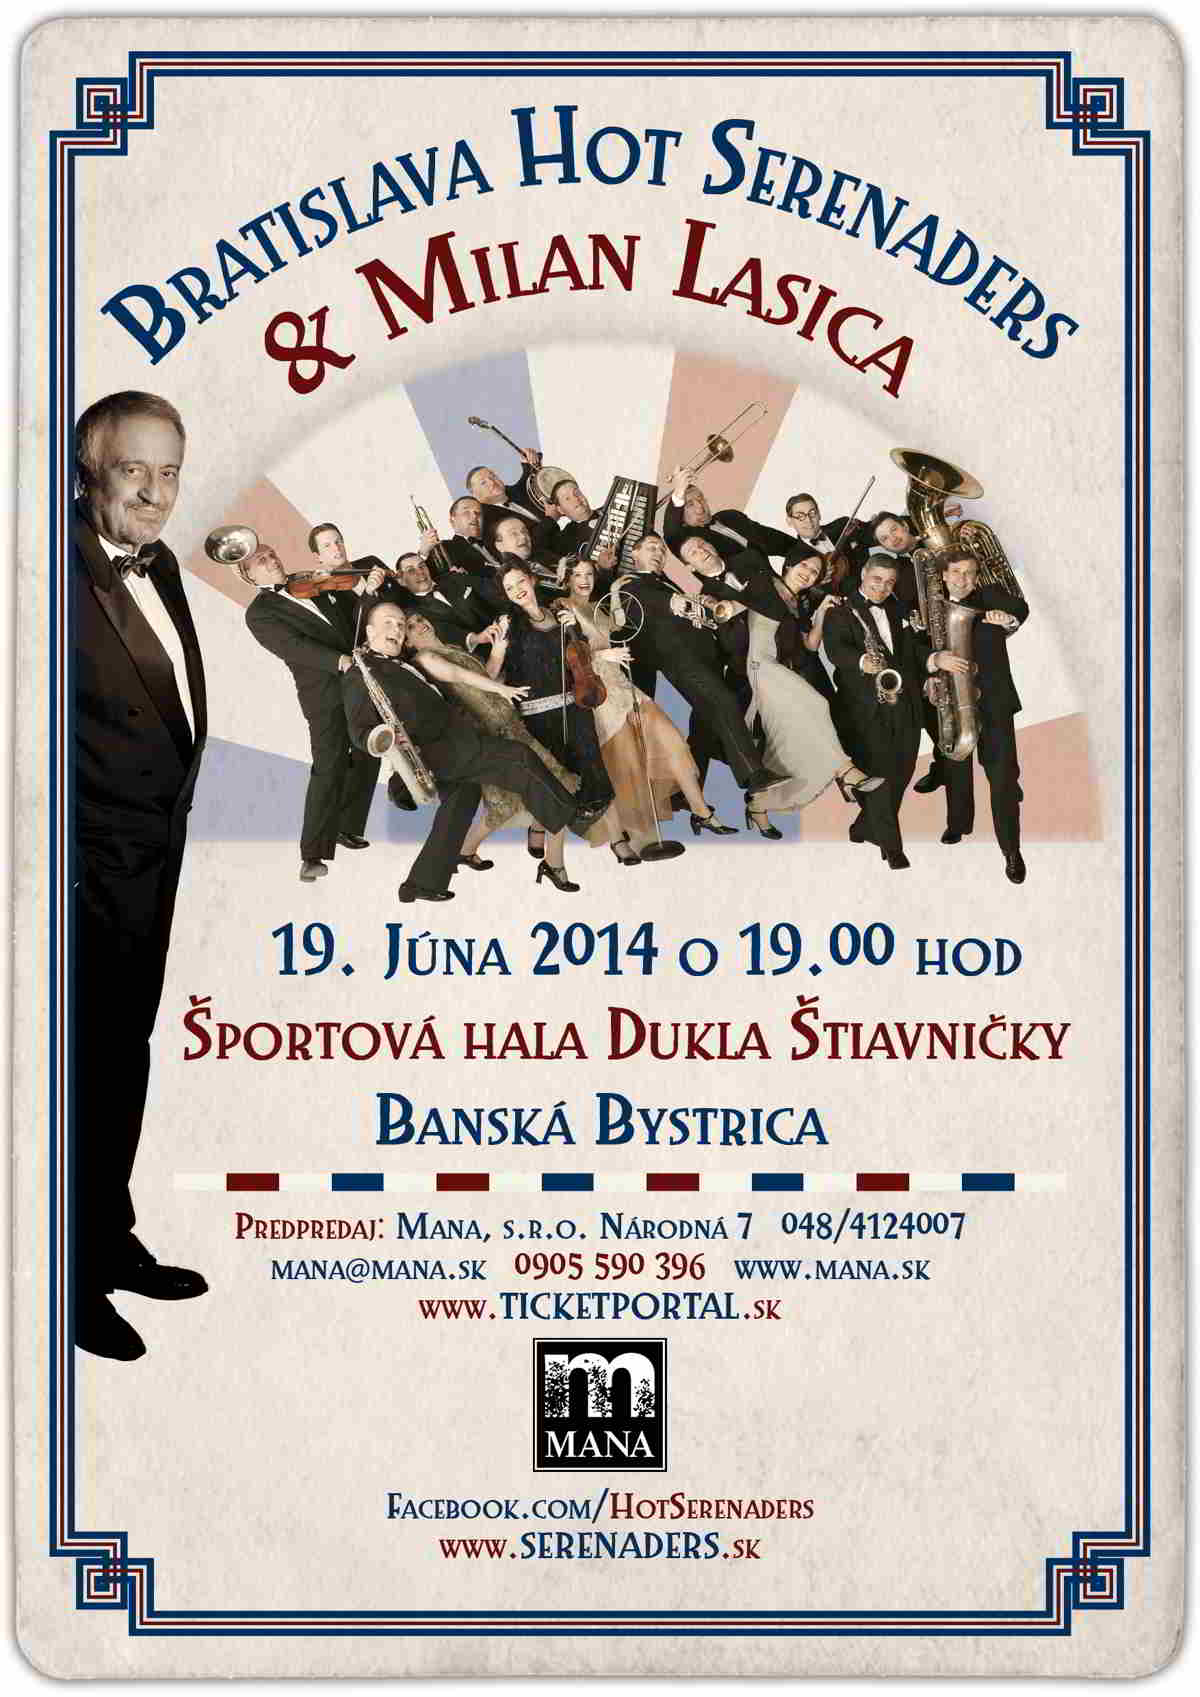 picture Koncert Bratislava Hot Serenaders a Milan Lasica